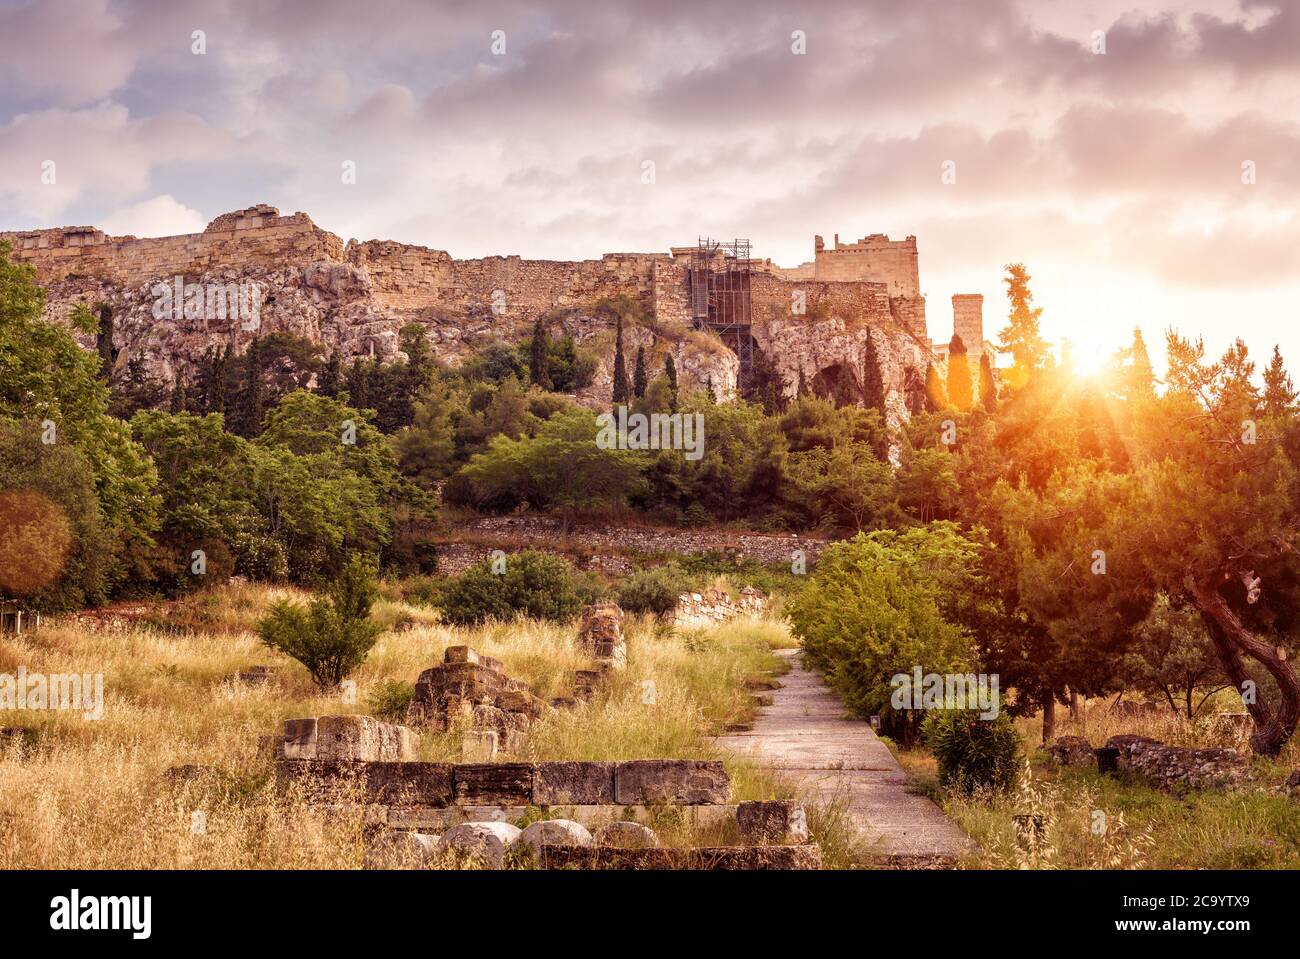 Landschaft von Athen, Antike Agora mit Blick auf Akropolis Hügel bei Sonnenuntergang, Griechenland. Landschaftlich schöner sonniger Blick auf die klassischen griechischen Ruinen im Zentrum von Athen. Berühmt Stockfoto